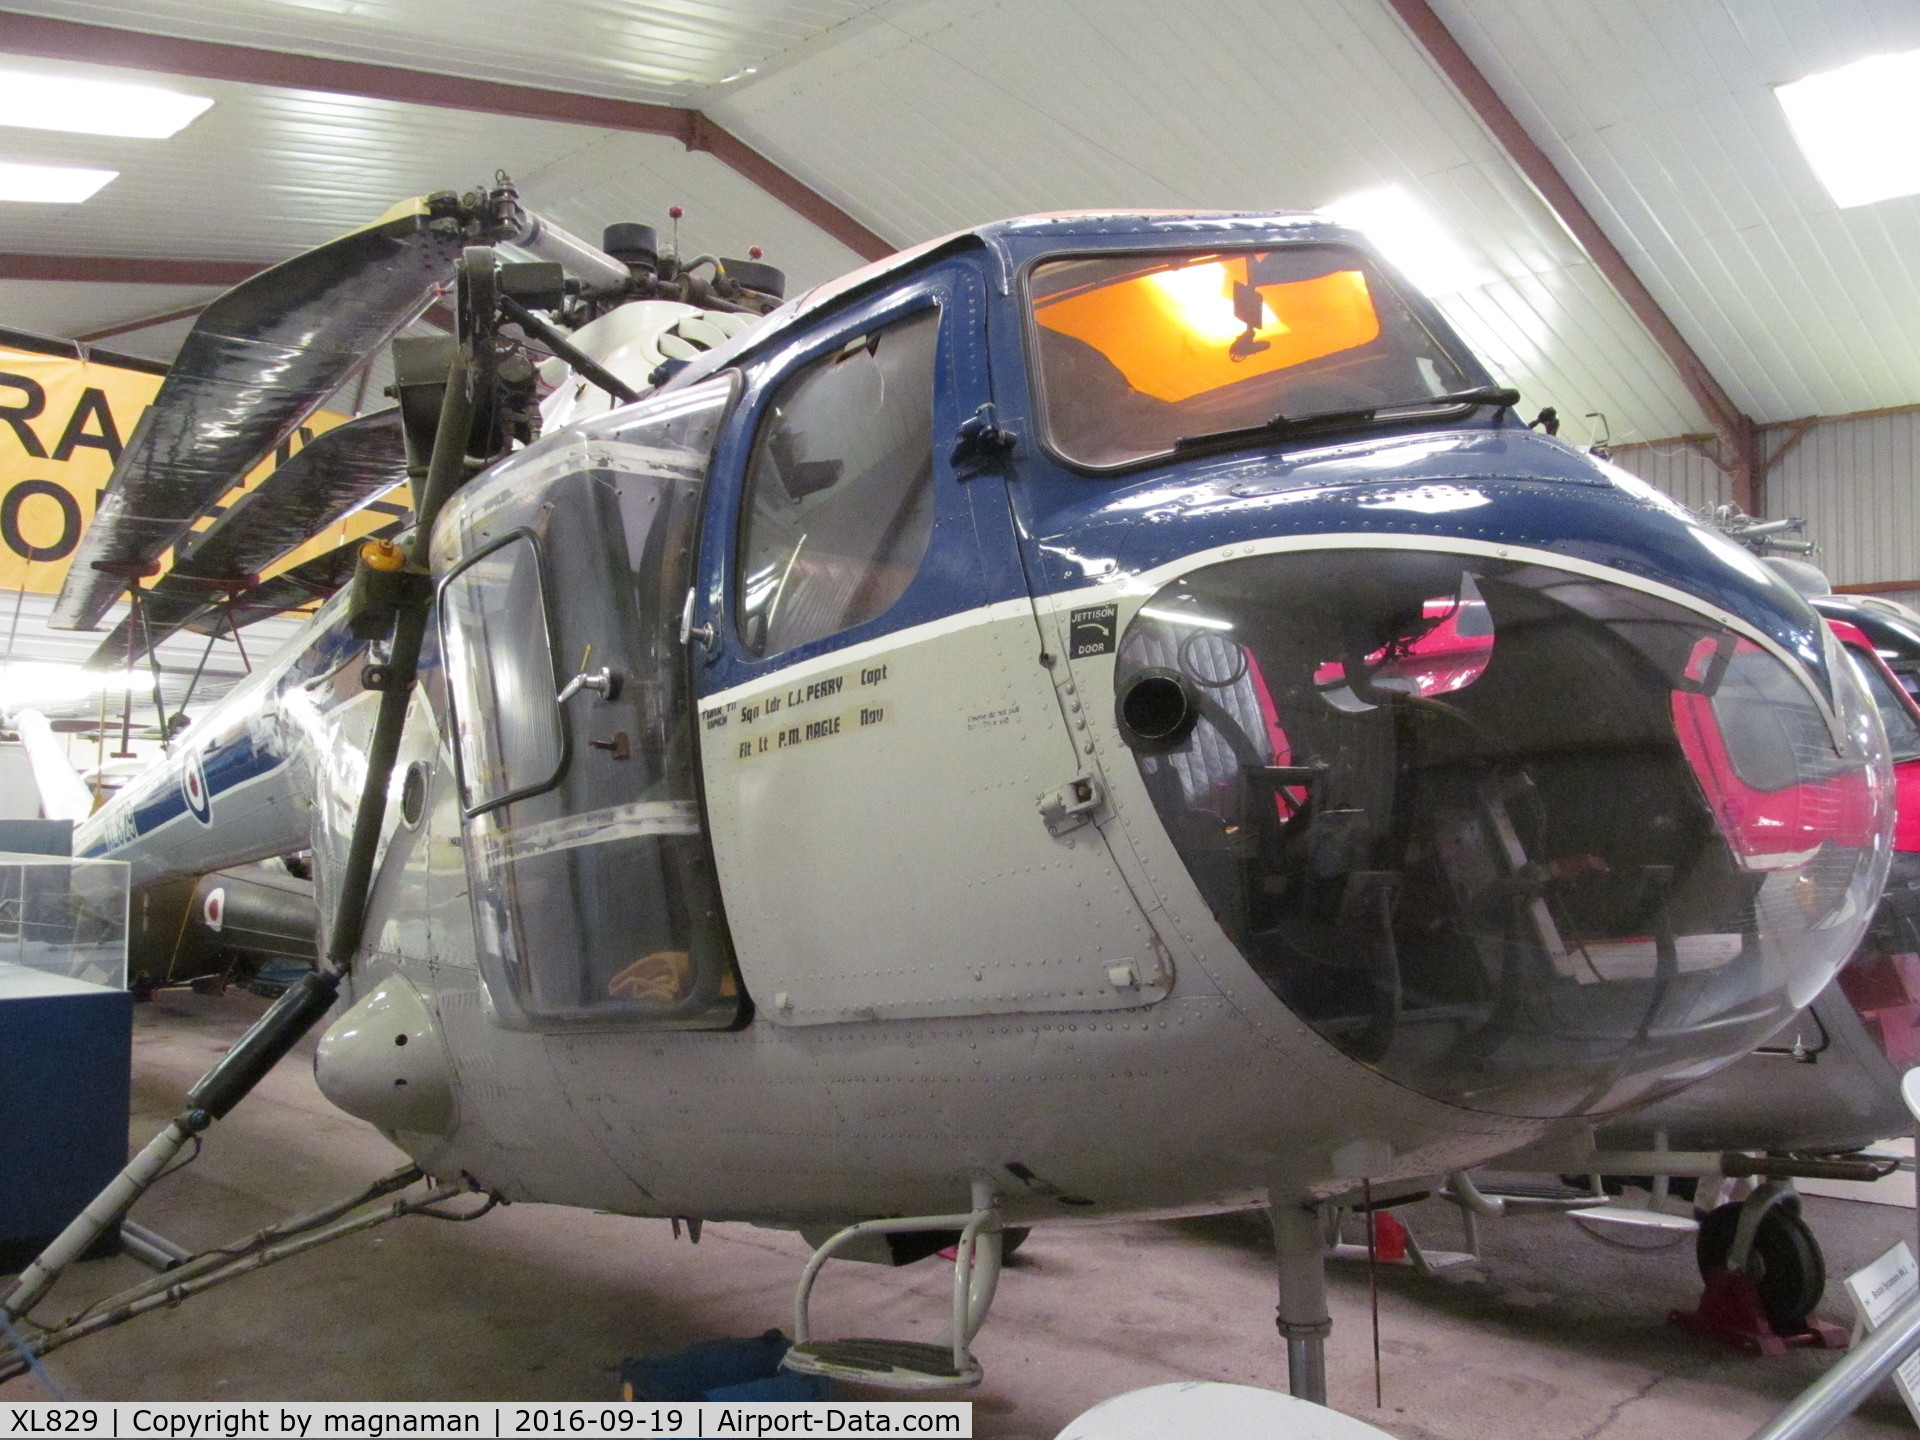 XL829, 1957 Bristol 171 Sycamore HR.14 C/N 13474, nice old chopper